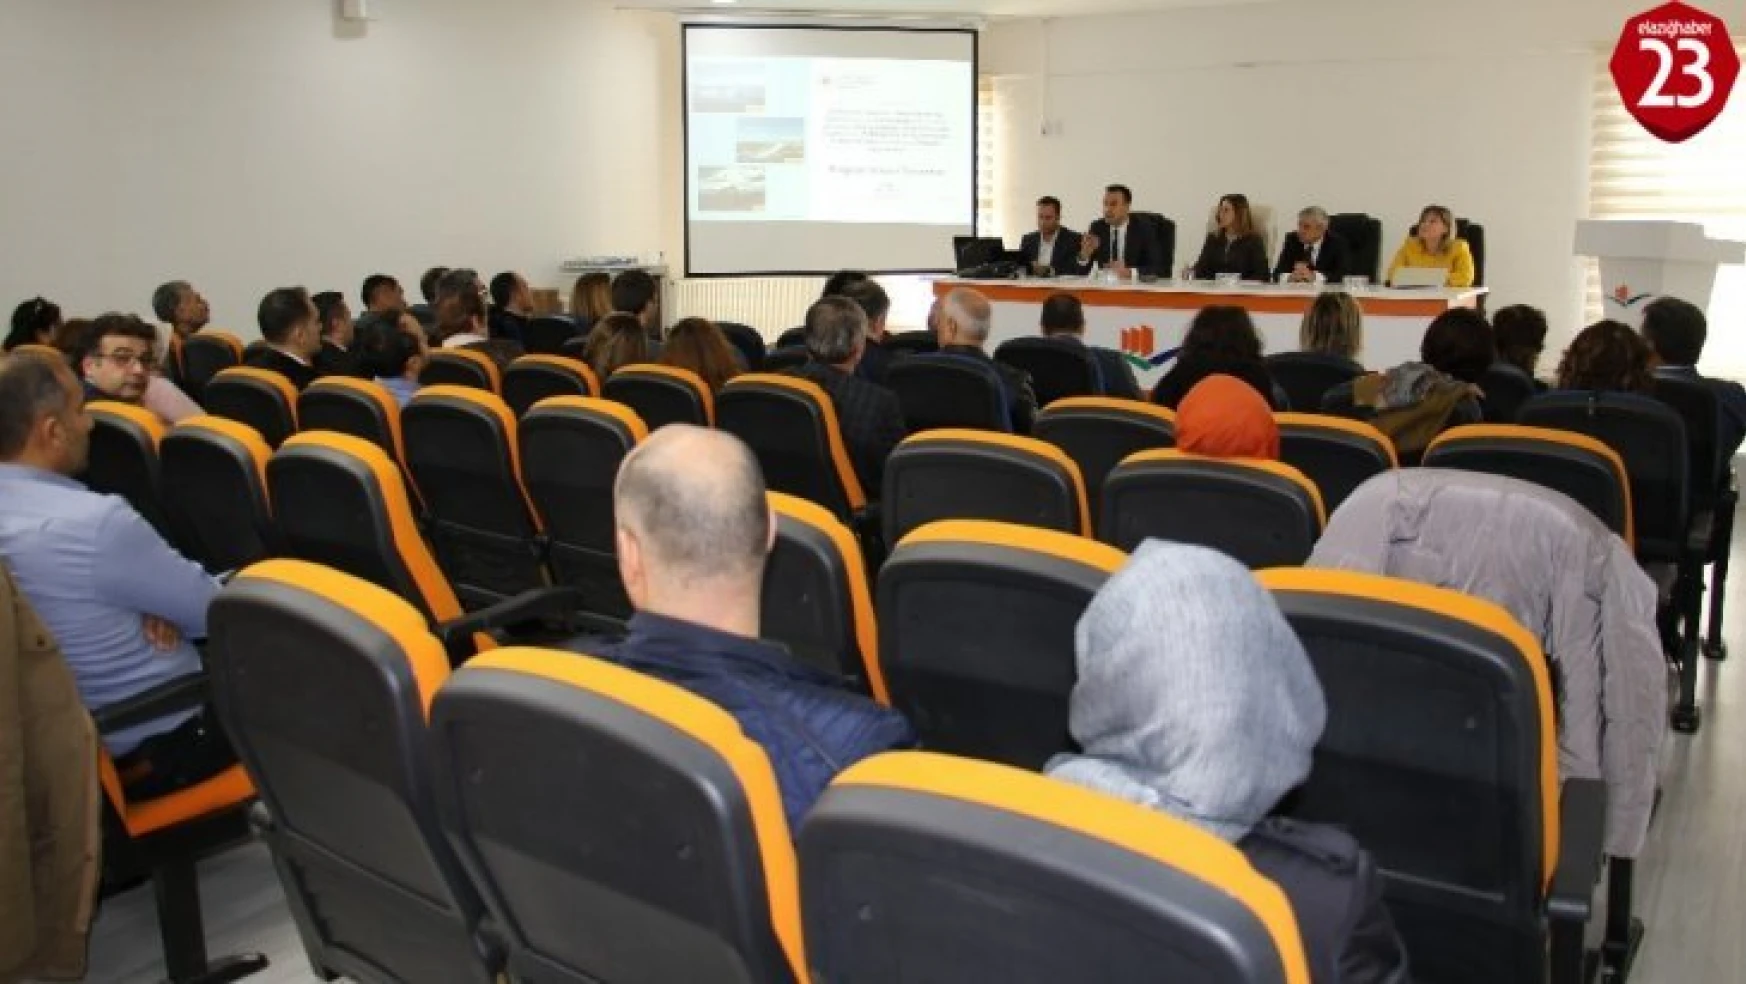 Elazığ'da Çevre ve Şehircilik İl Müdürlükleri Bölgesel İstişare toplantısı